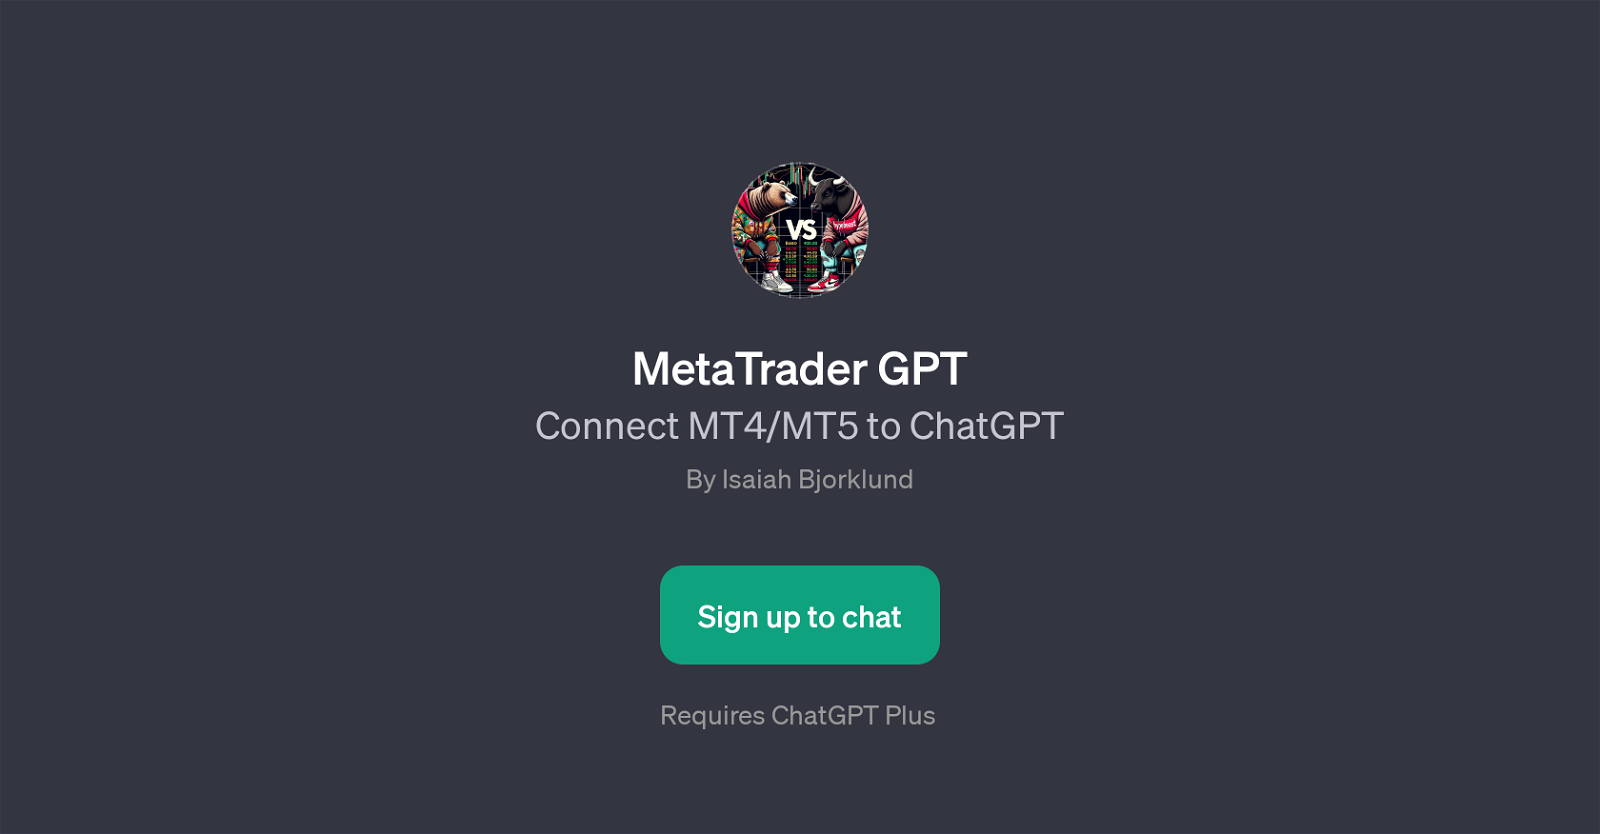 MetaTrader GPT website